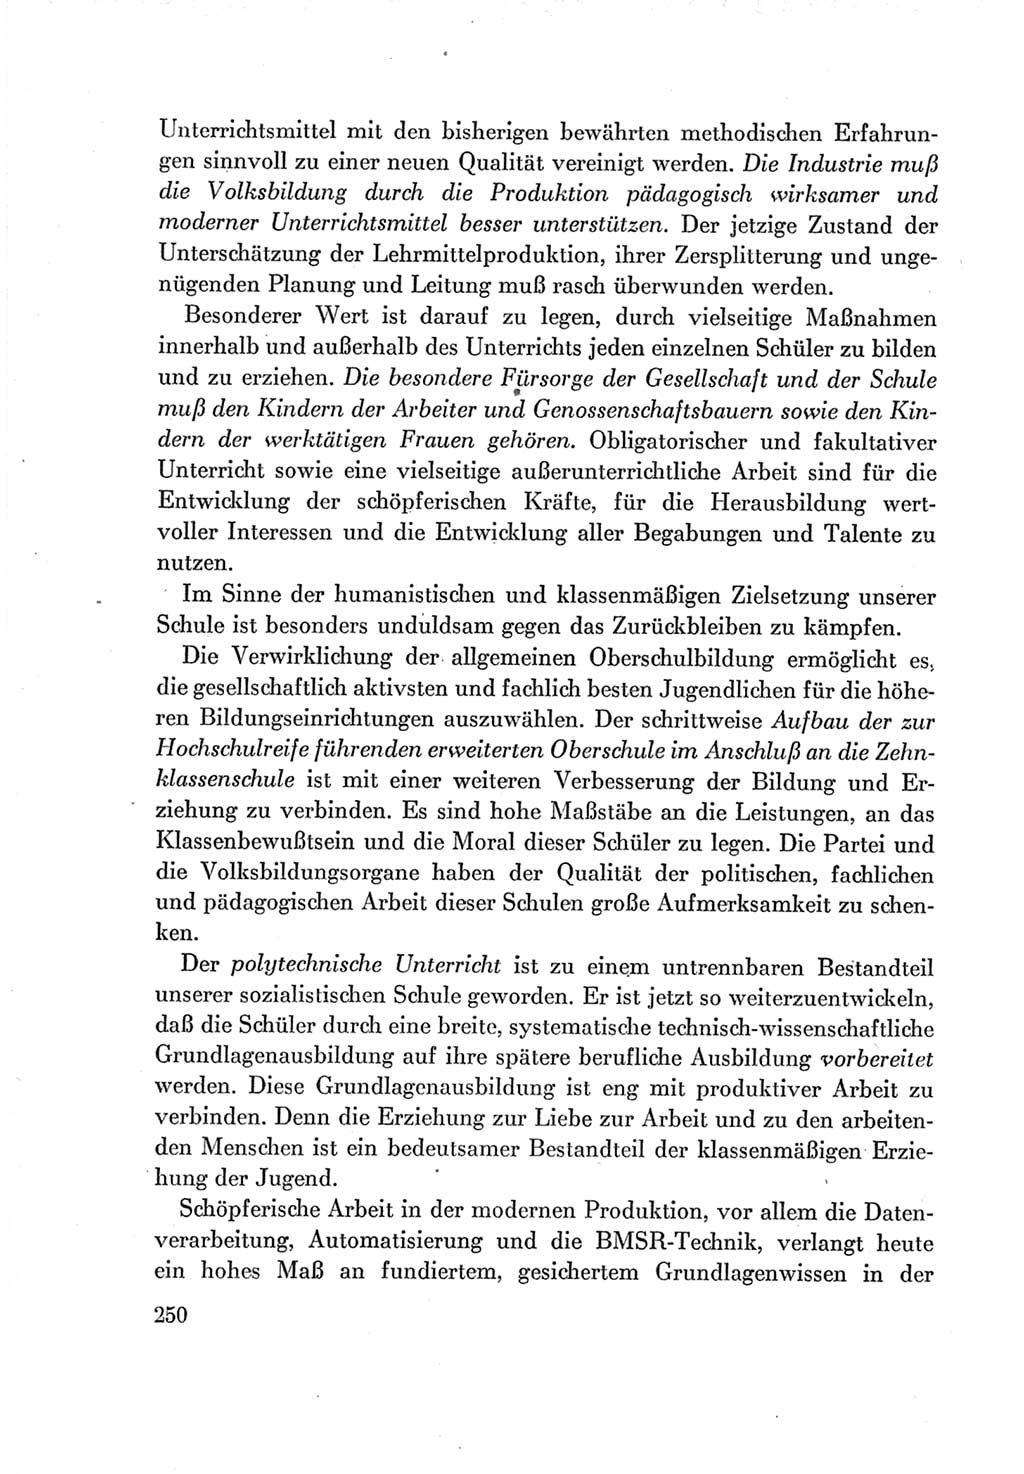 Protokoll der Verhandlungen des Ⅶ. Parteitages der Sozialistischen Einheitspartei Deutschlands (SED) [Deutsche Demokratische Republik (DDR)] 1967, Band Ⅰ, Seite 250 (Prot. Verh. Ⅶ. PT SED DDR 1967, Bd. Ⅰ, S. 250)